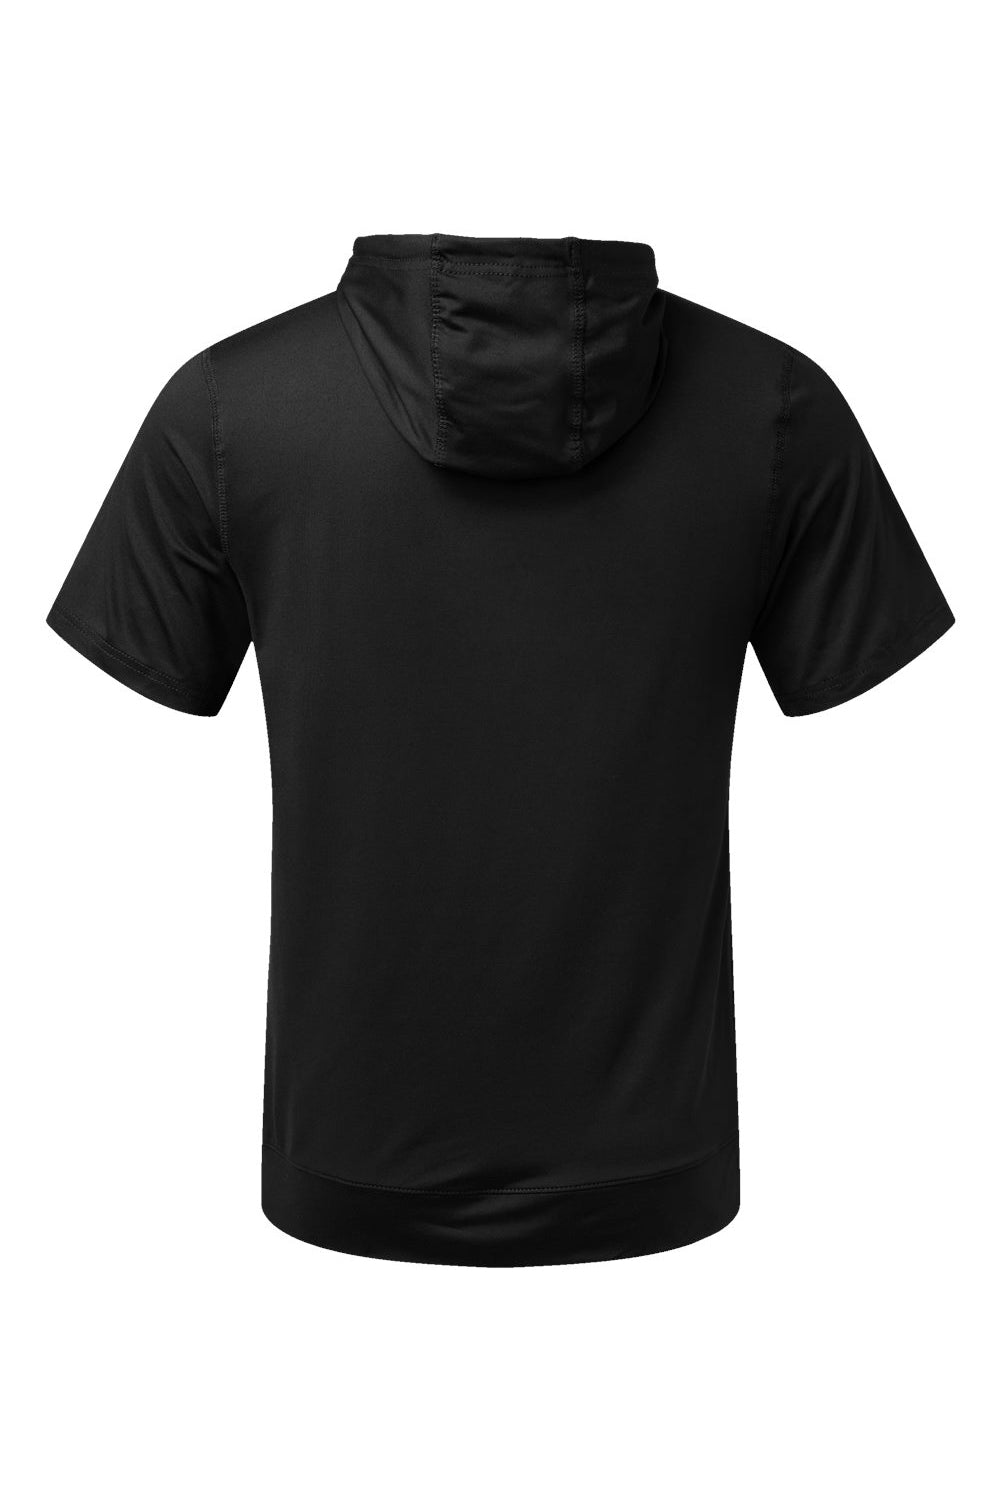 Holloway 222505 Mens Eco Revive Ventura Short Sleeve Hooded Sweatshirt Hoodie Black Flat Back